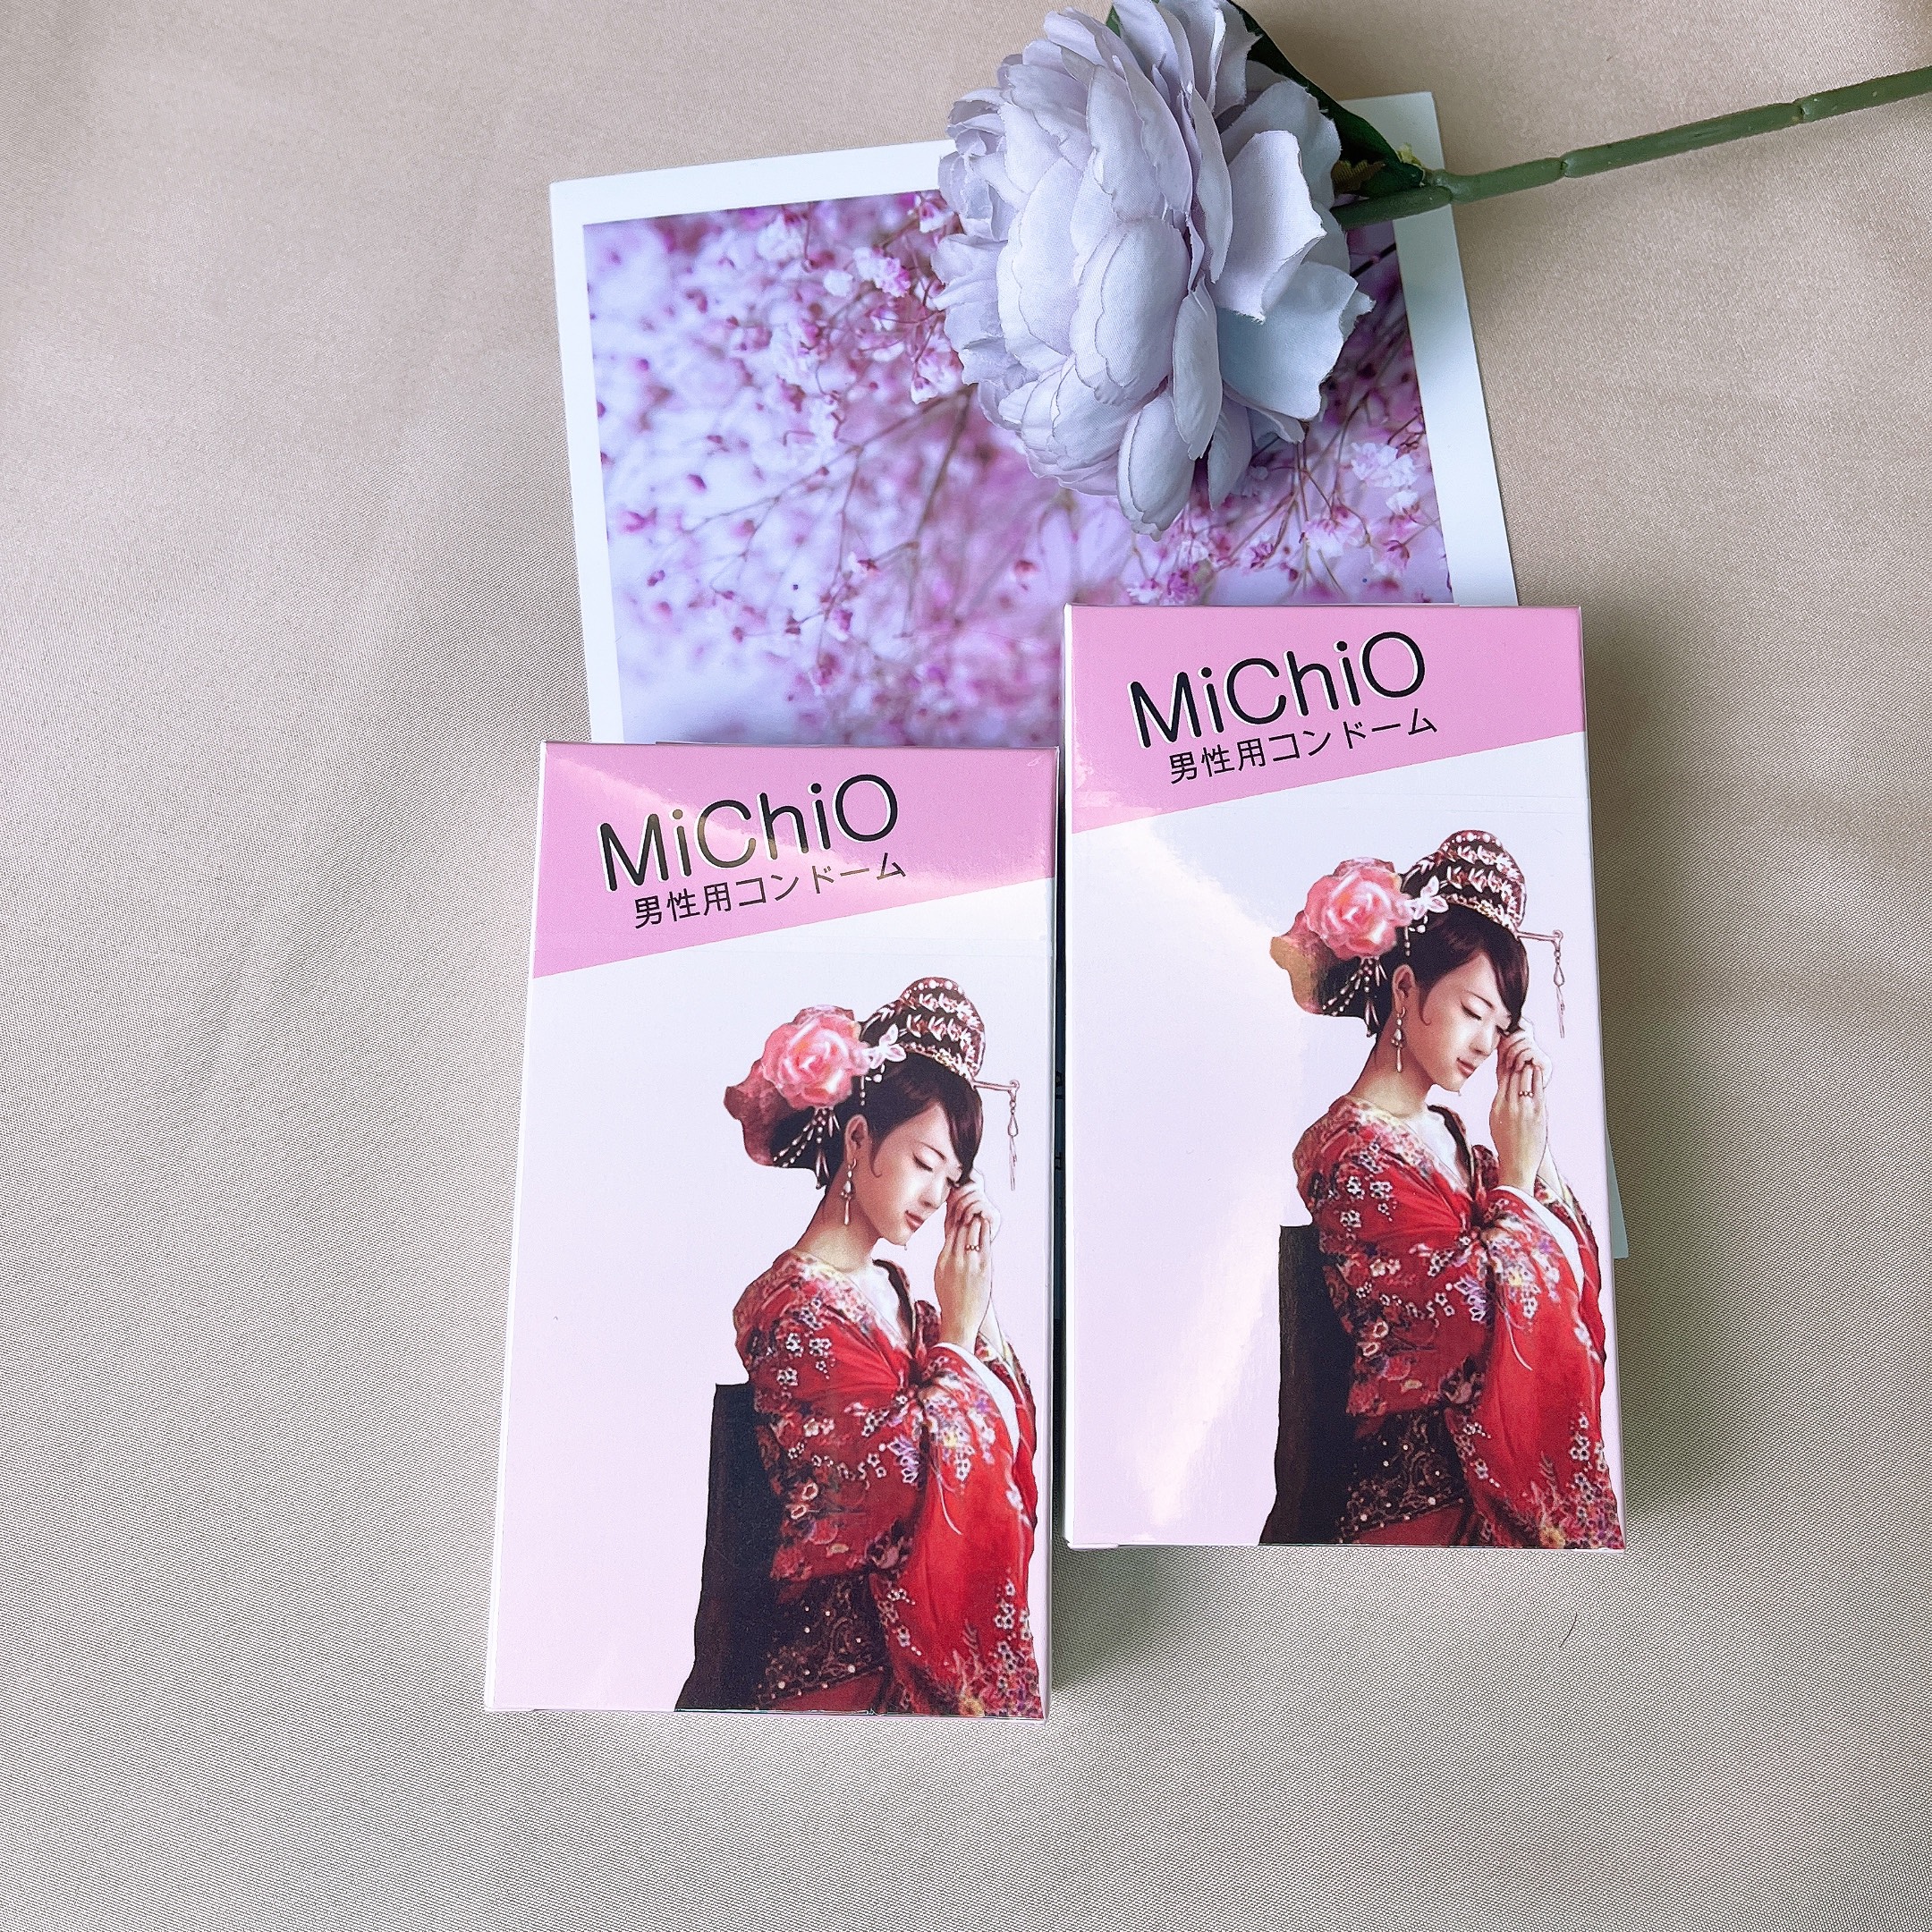 Bao Cao Su MICHIO NHẬT BẢN  - Gân và siêu mỏng, hương chuối nhẹ nhàng TH STORE 01.